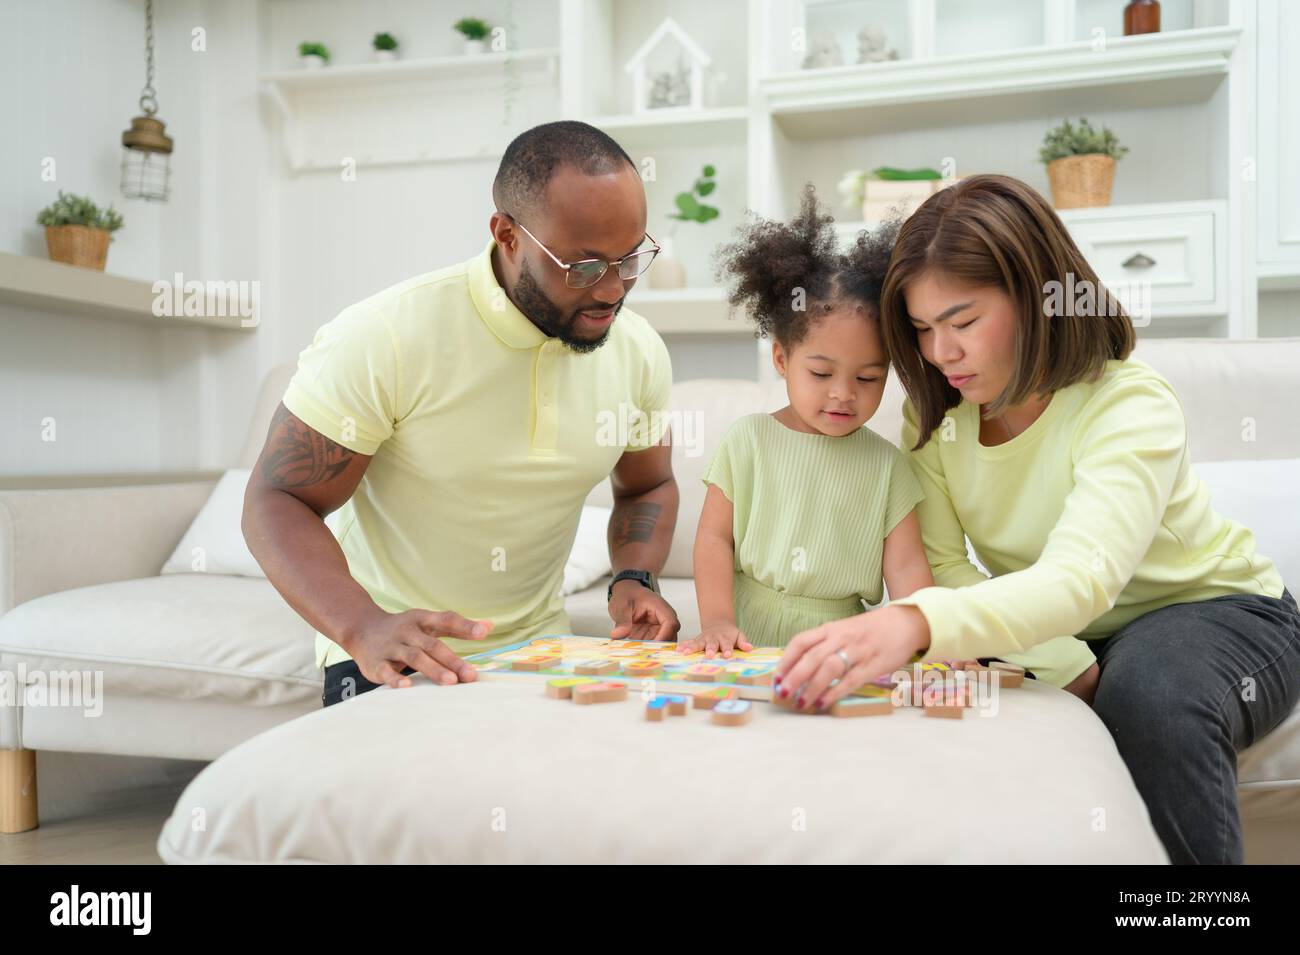 Vater, Mutter und ein Kind, das sich ausruhen und Spaß haben kann, während er zu Hause Urlaub macht. Stockfoto